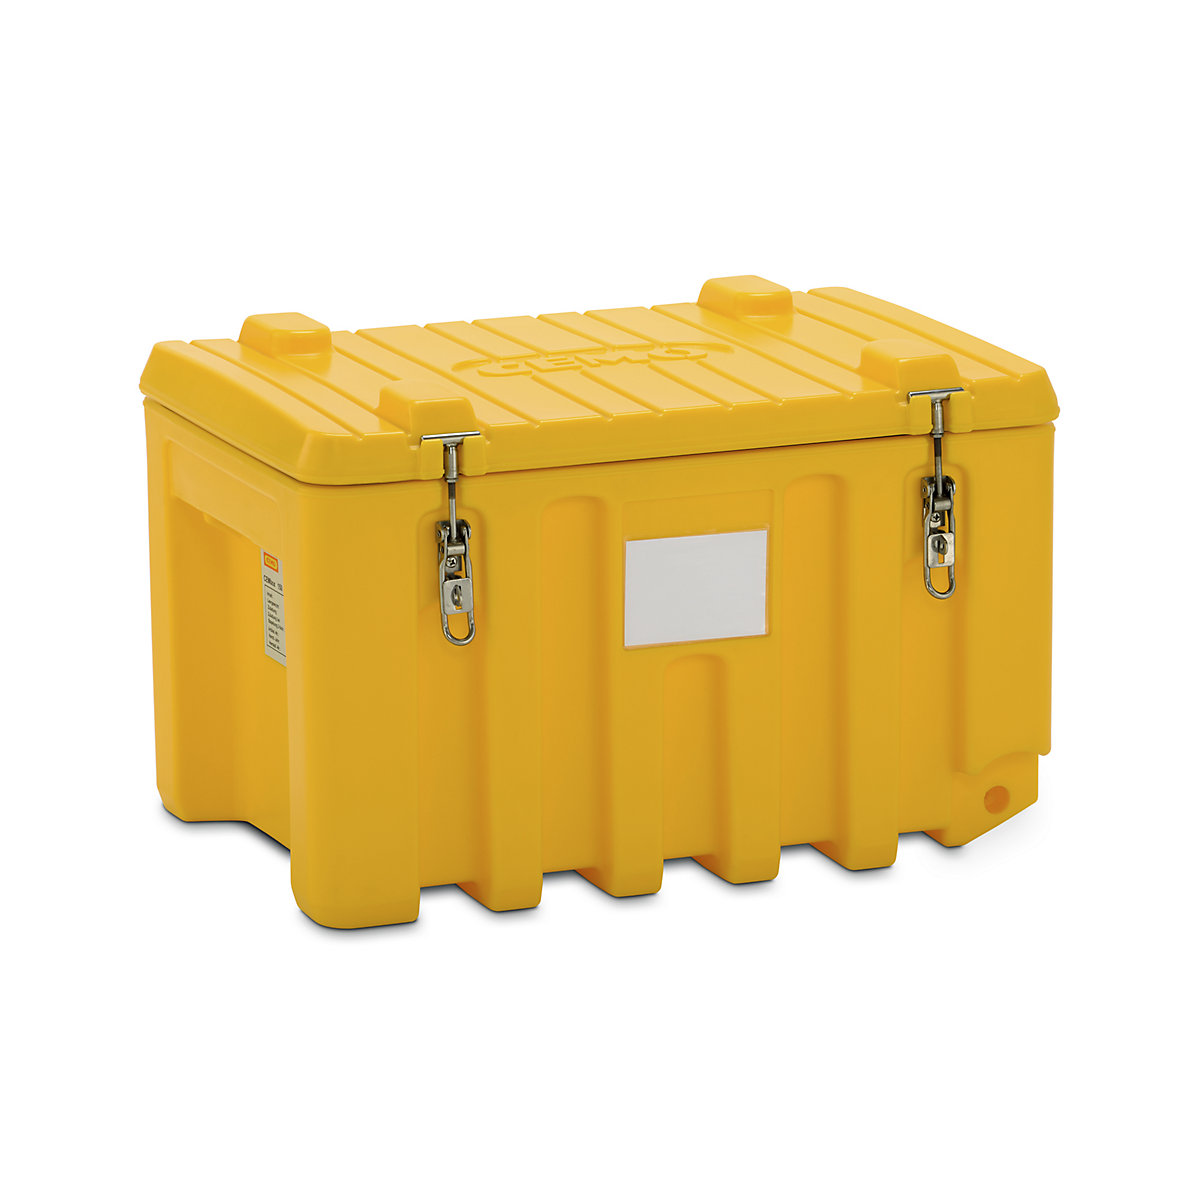 CEMO Universalbox aus Polyethylen, Inhalt 150 l, Traglast 100 kg, gelb